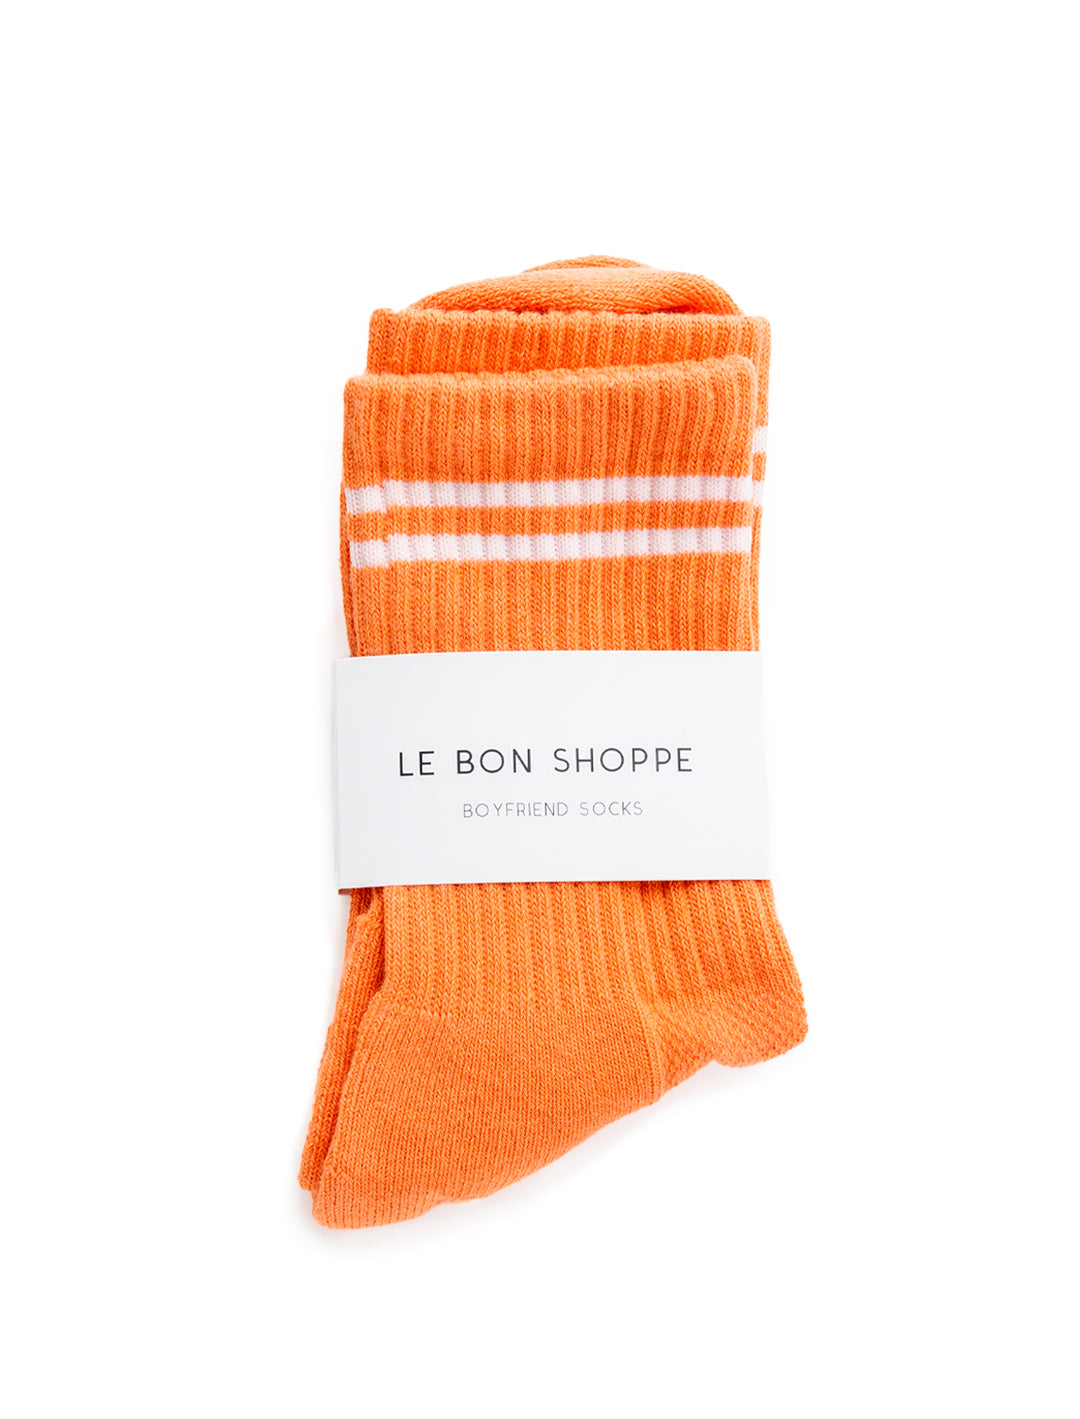 Overhead view of Le Bon Shoppe's boyfriend socks in orange.